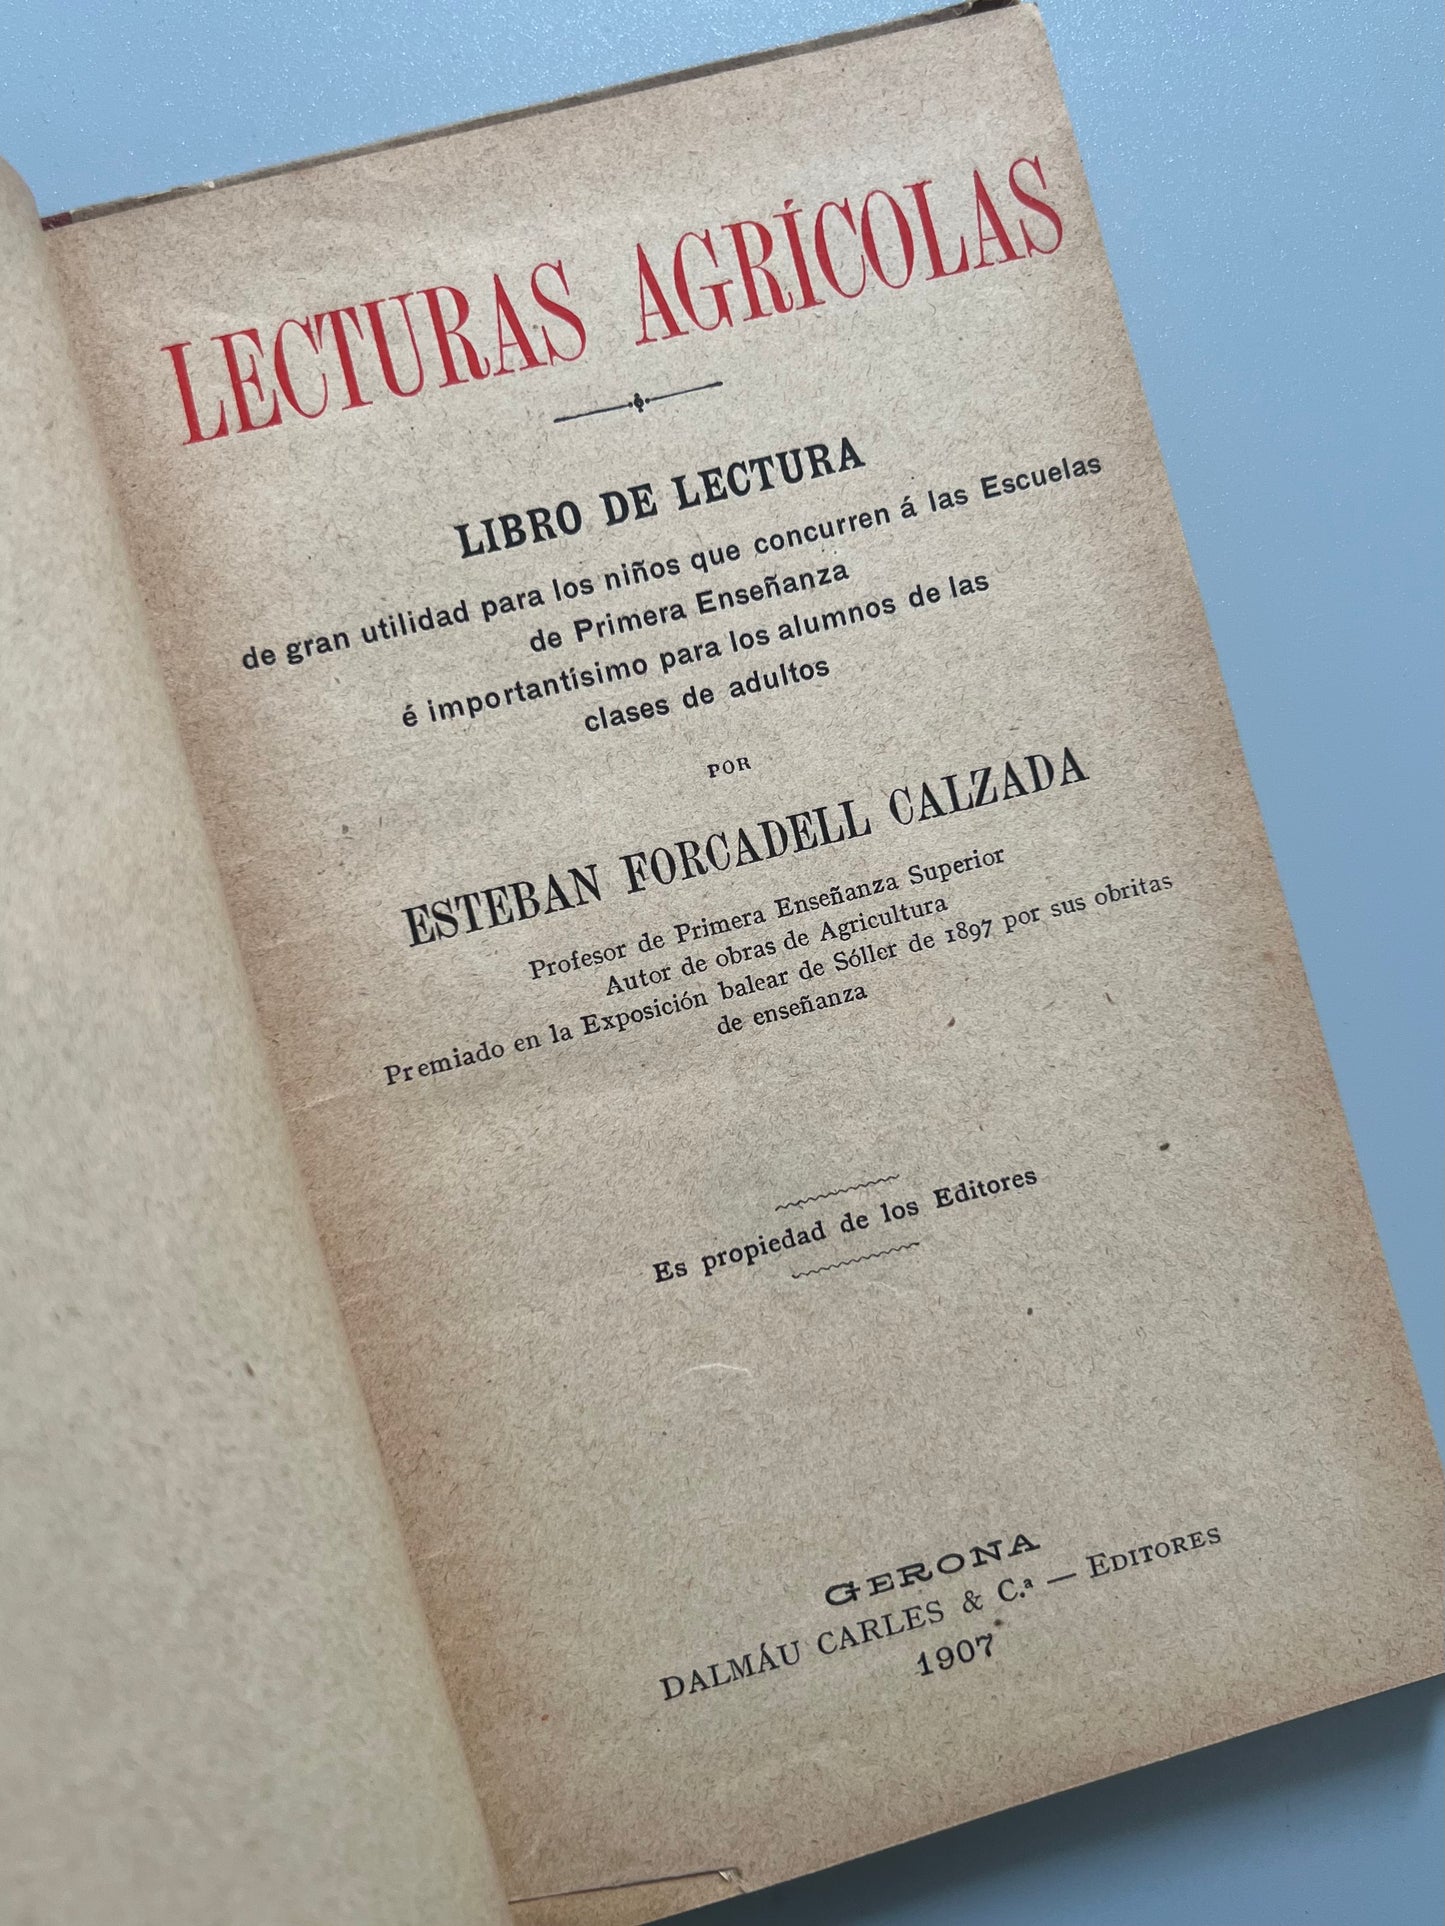 Lecturas agrícolas, Esteban Forcadell Calzada - Dalmáu Carles & Cª editores, 1907